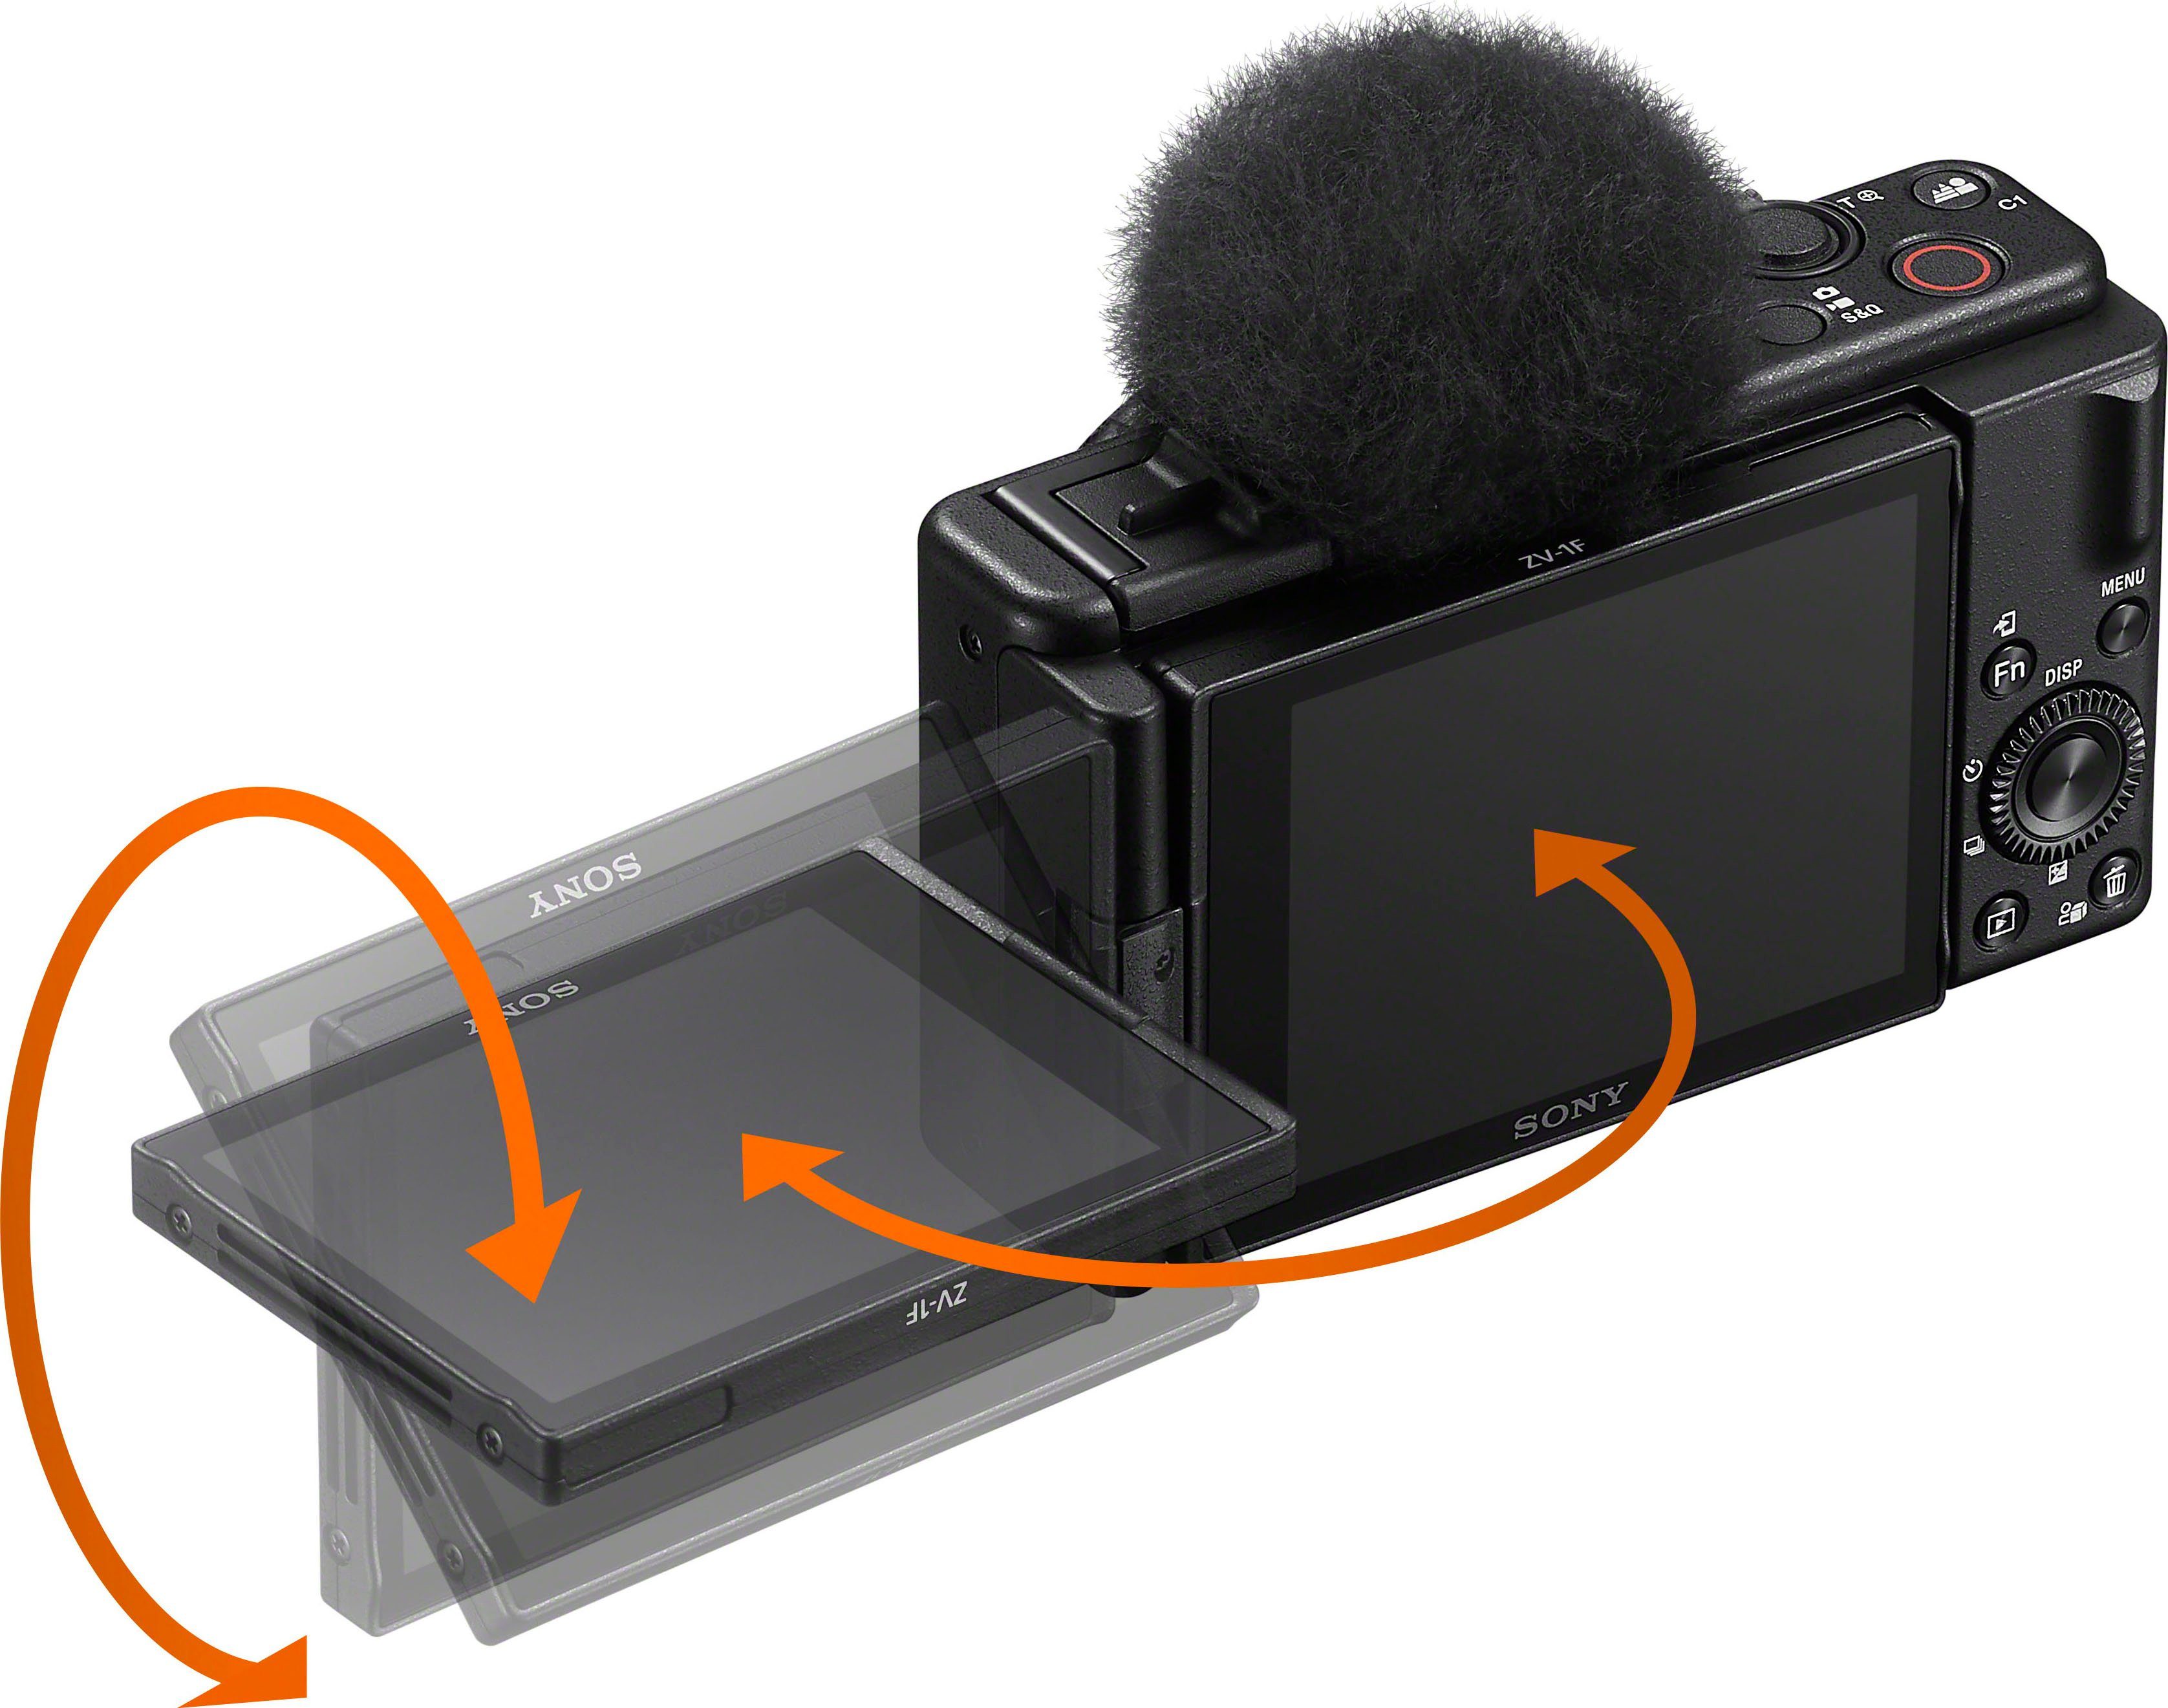 Gruppen, Kompaktkamera Objektiv, ZV-1F Sony WLAN) 6 T* 6 MP, Bluetooth, 20,1 Elemente in Tessar (ZEISS